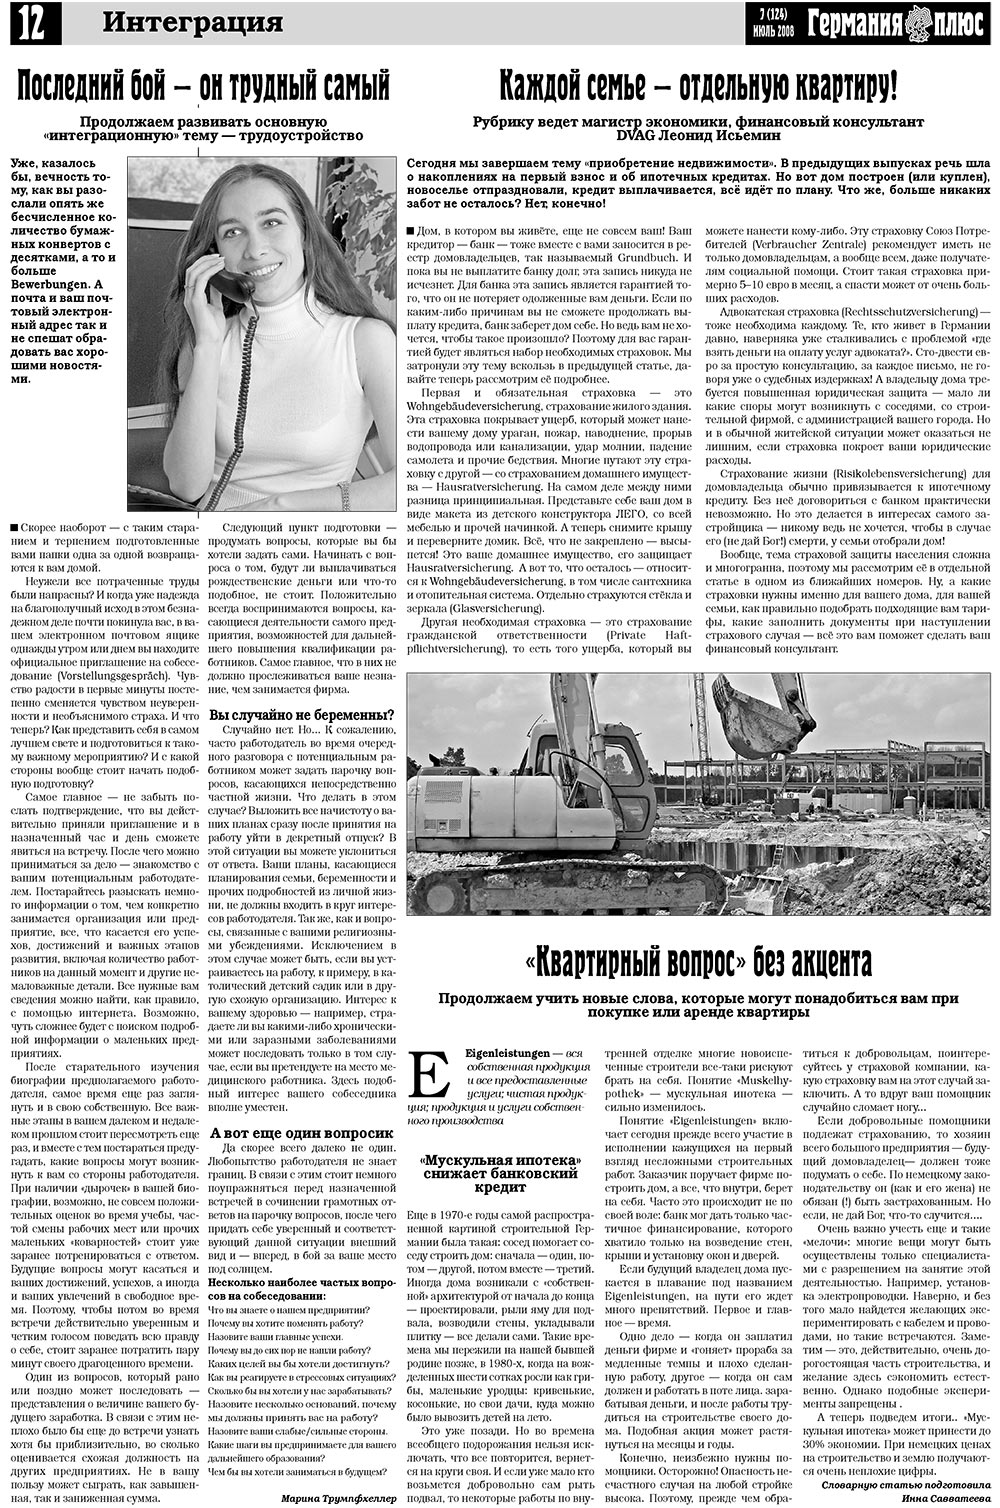 Германия плюс (газета). 2008 год, номер 7, стр. 16